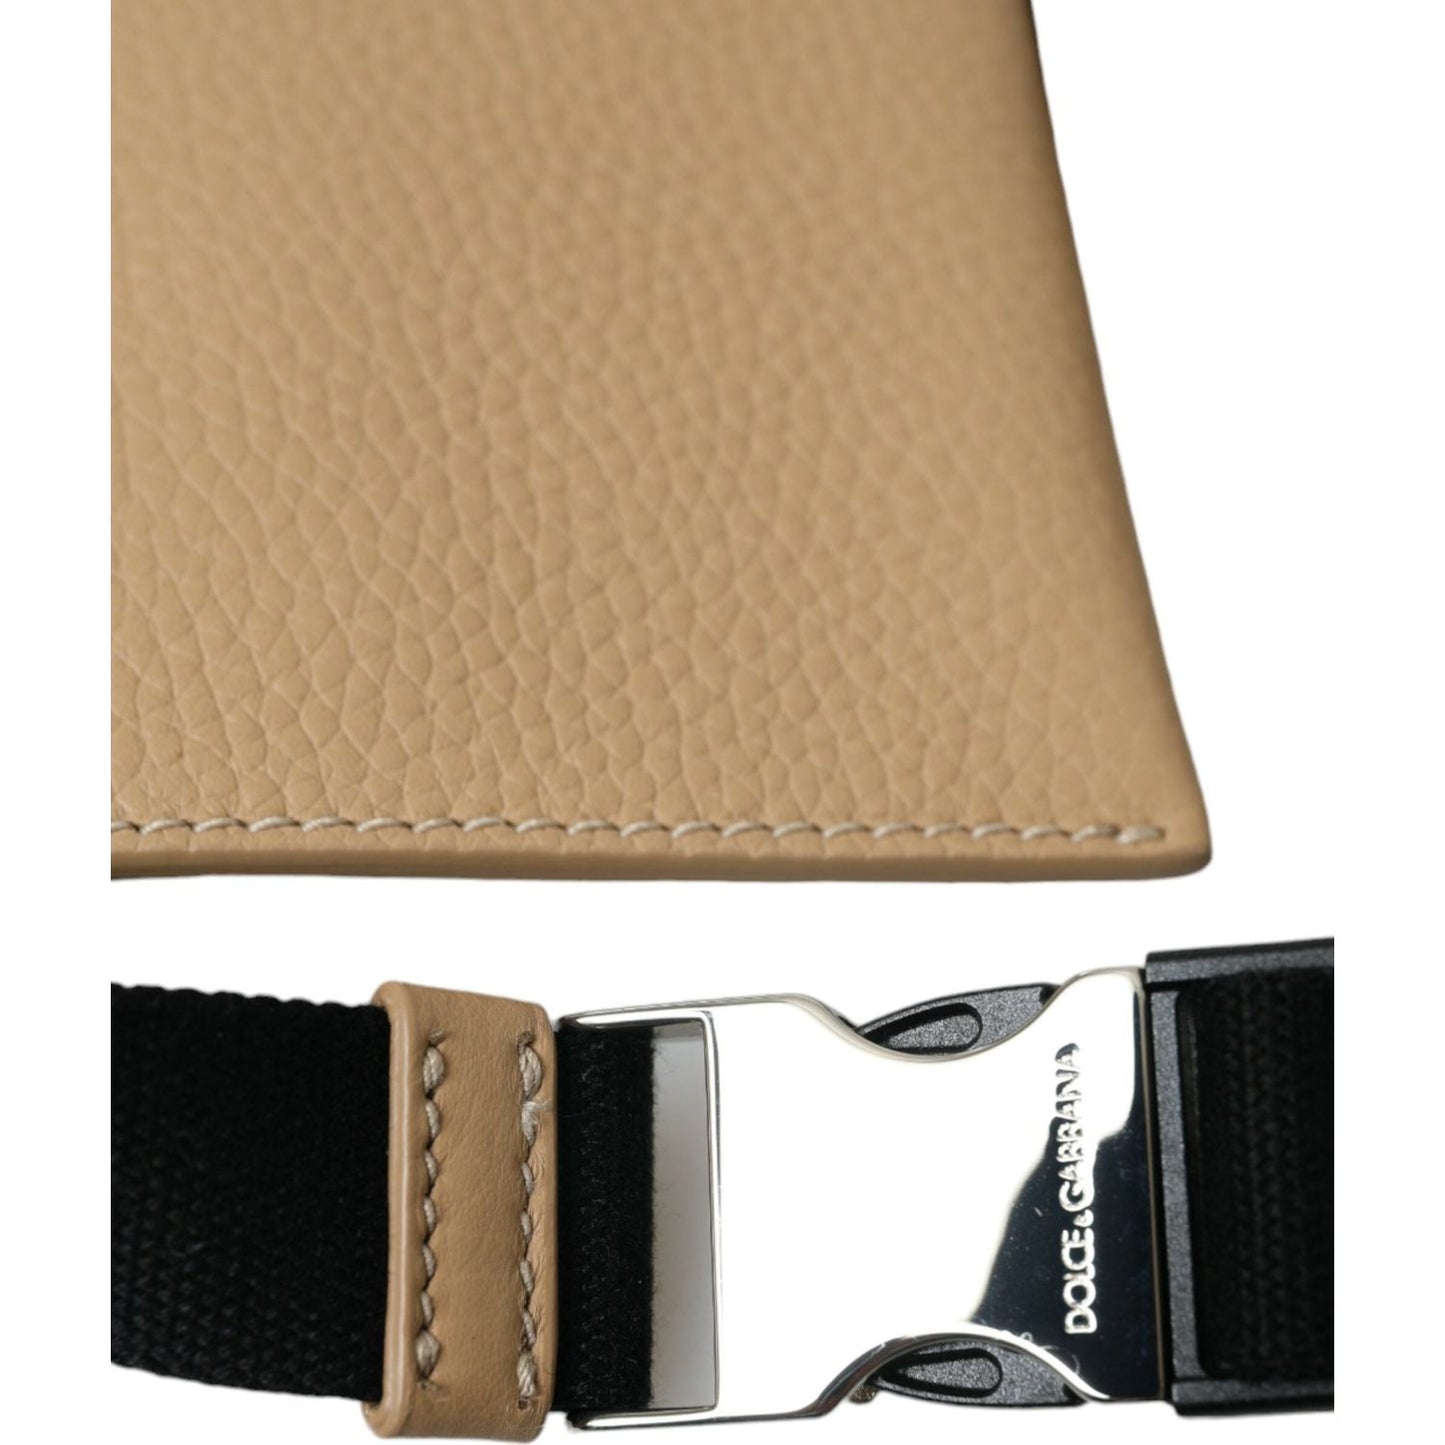 Dolce & Gabbana | Elegance Redefined Beige Leather Belt Bag| McRichard Designer Brands   